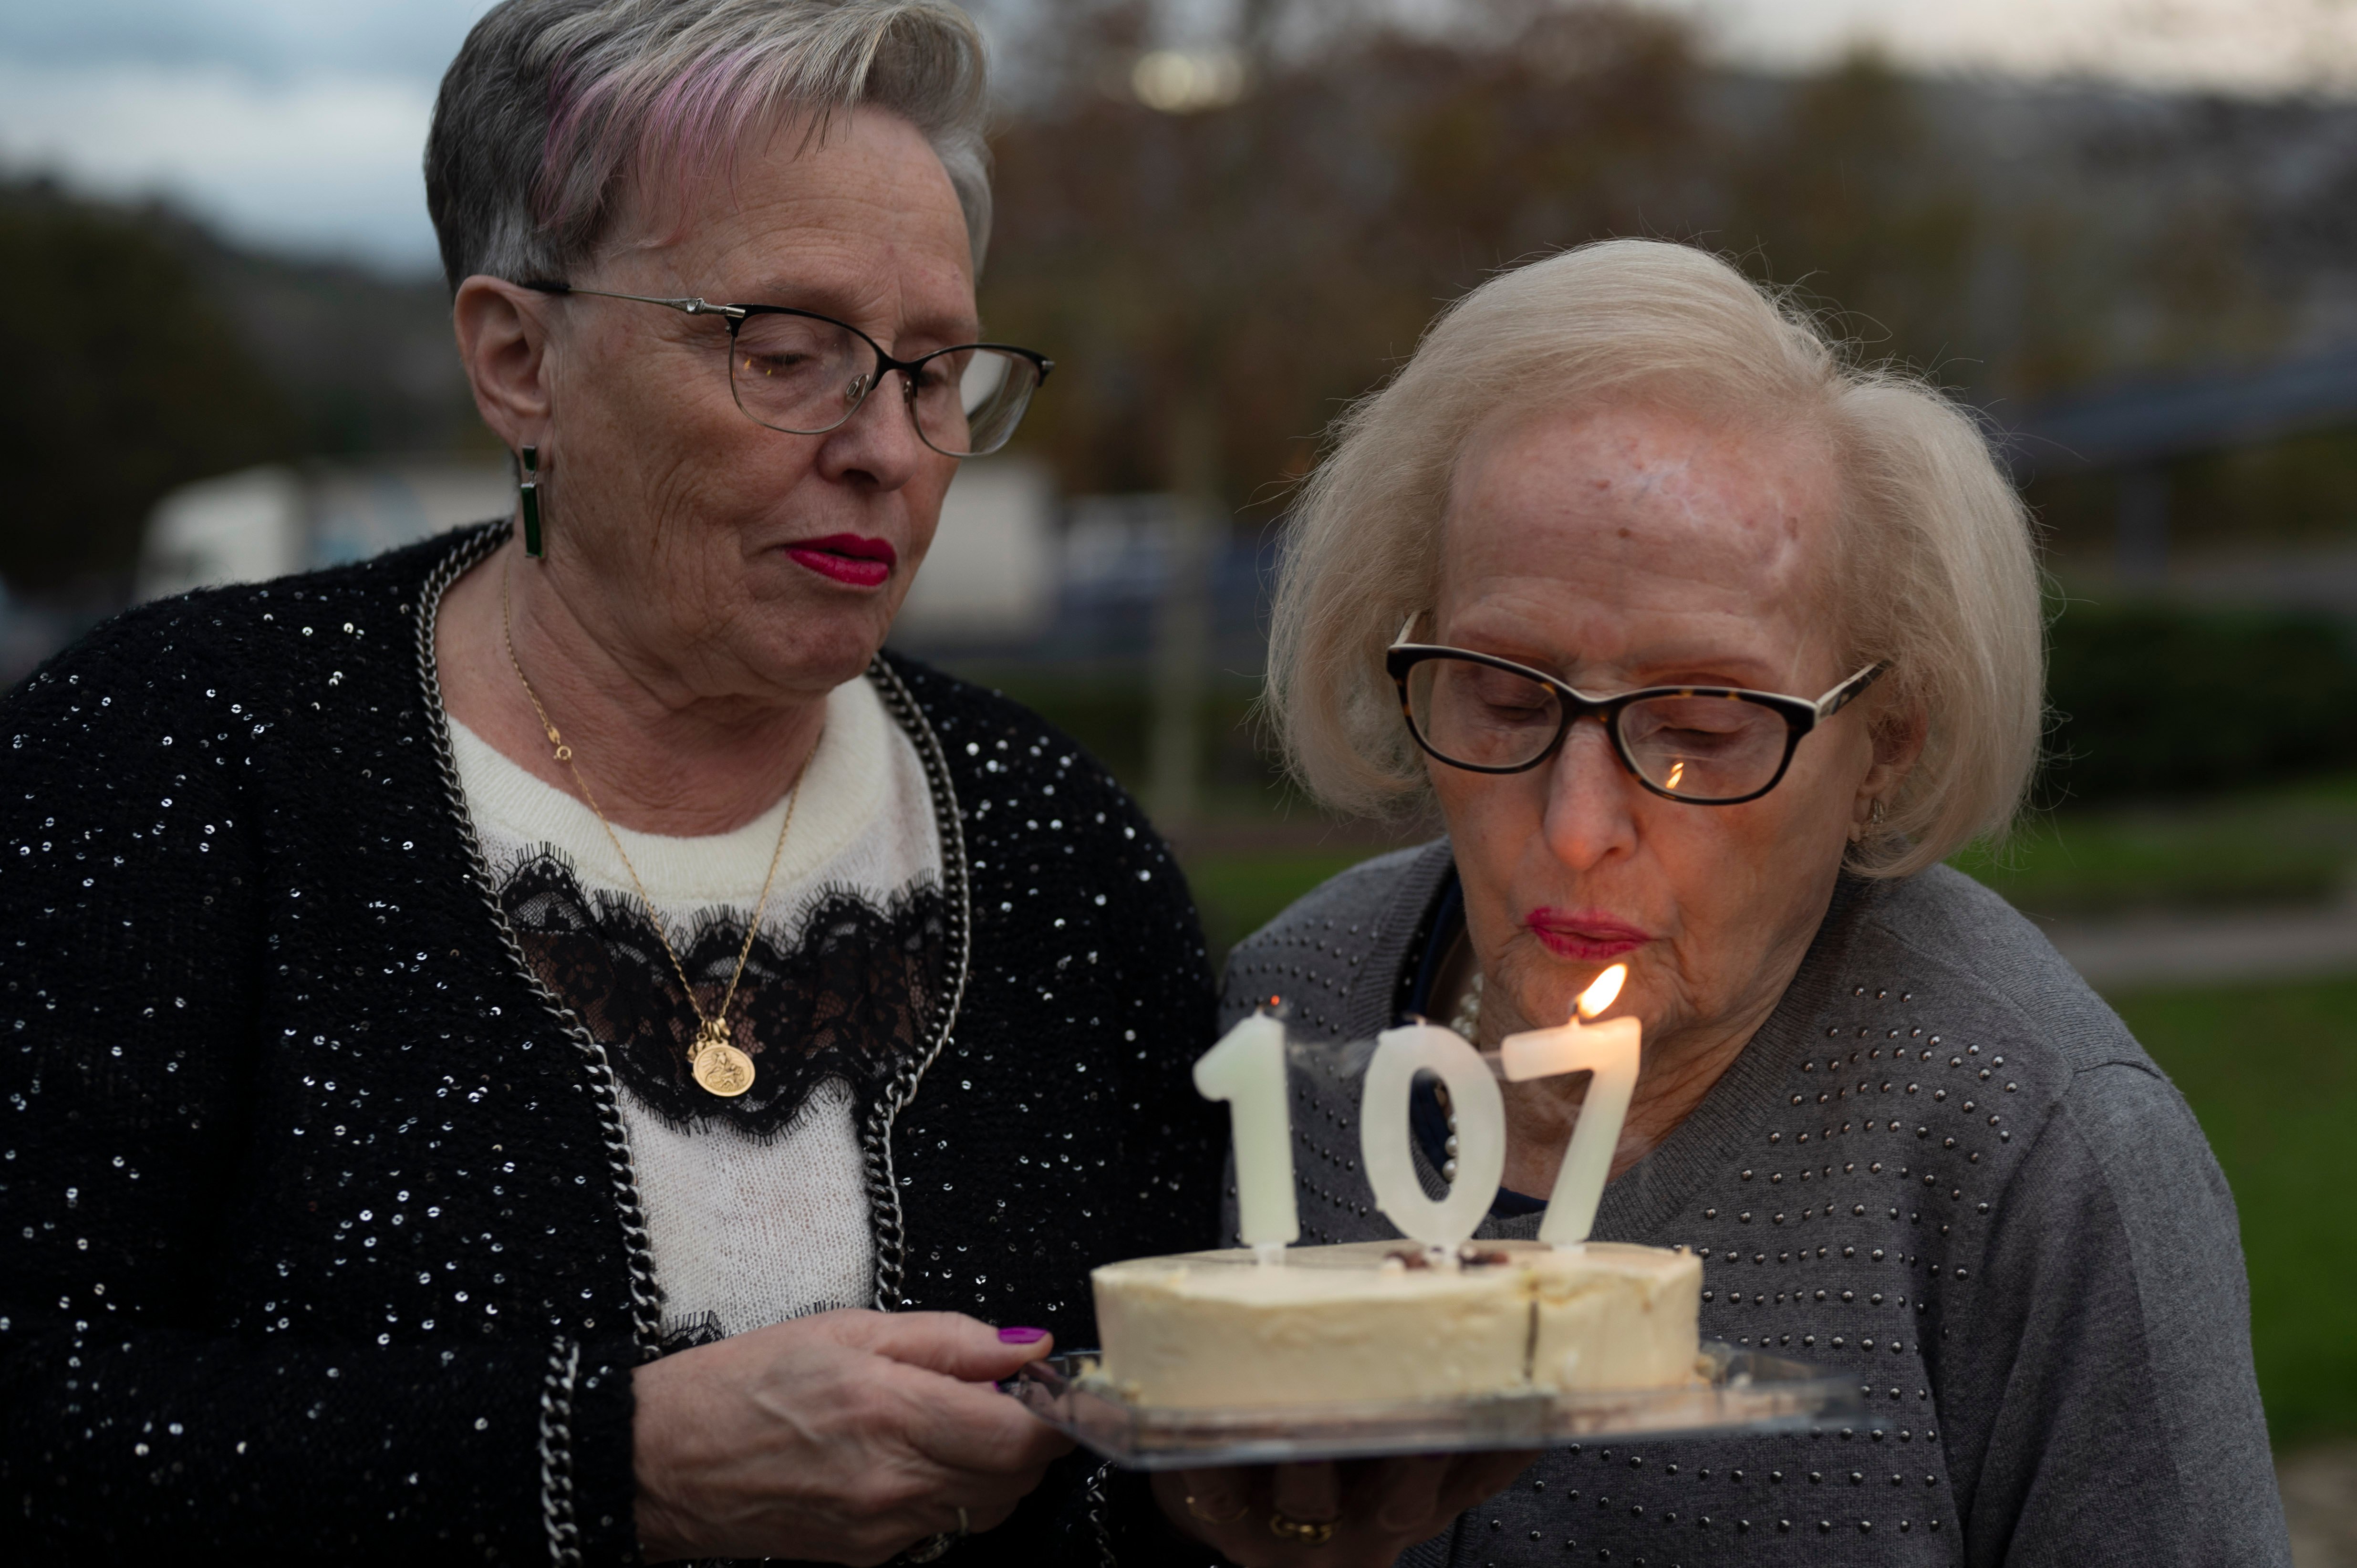 Esperanza Cortiñas posa con su hija Mª del Carmen Vázquez Cortiñas con una tarta de cumpleaños,107 años

Fotos Martiño Pinal